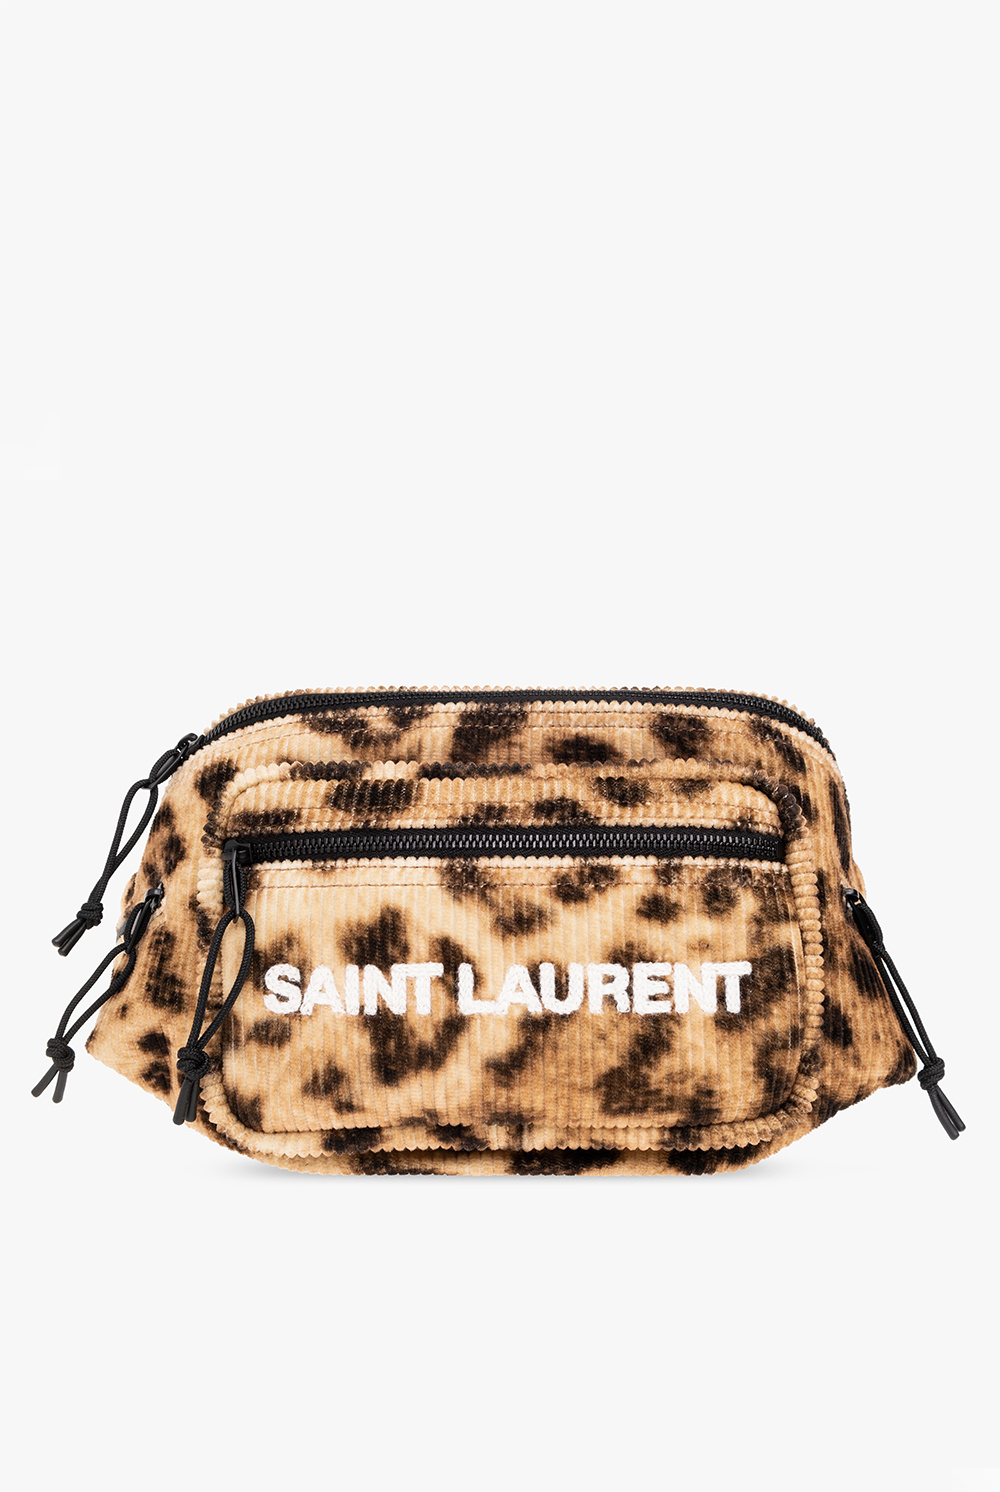 Saint Laurent ‘Nuxx’ corduroy belt bag